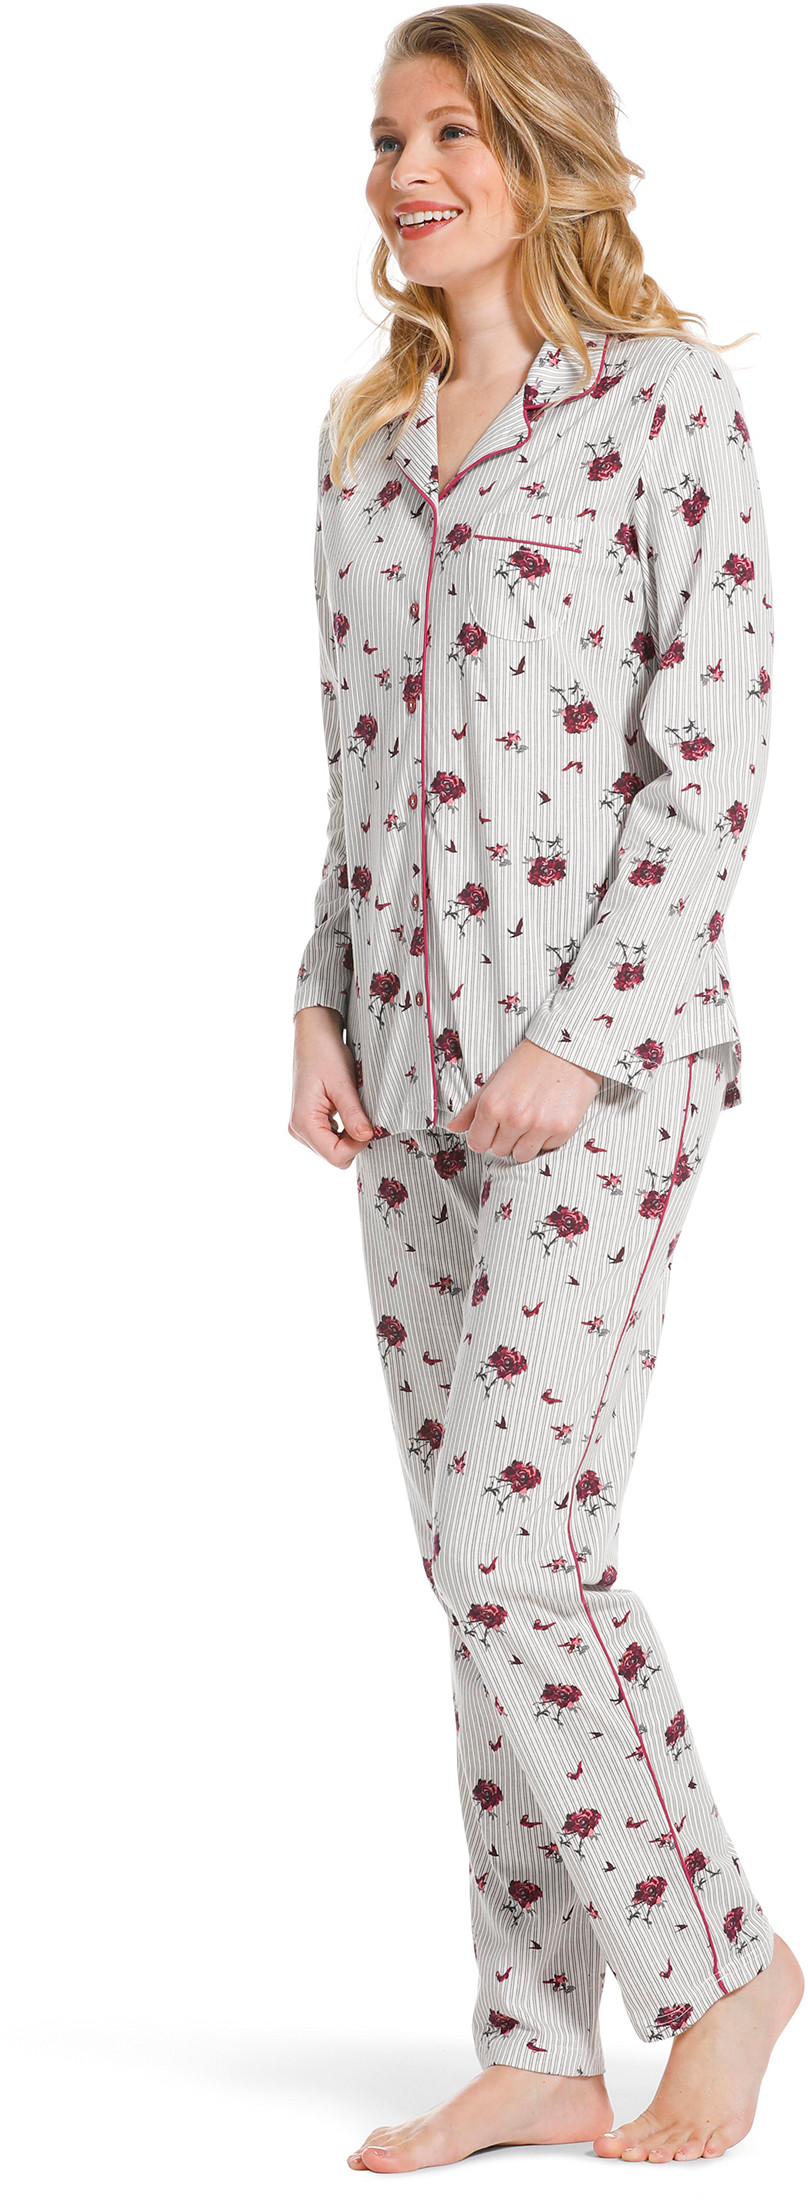 Pastunette doorknoop dames pyjama 20222-156-6-42